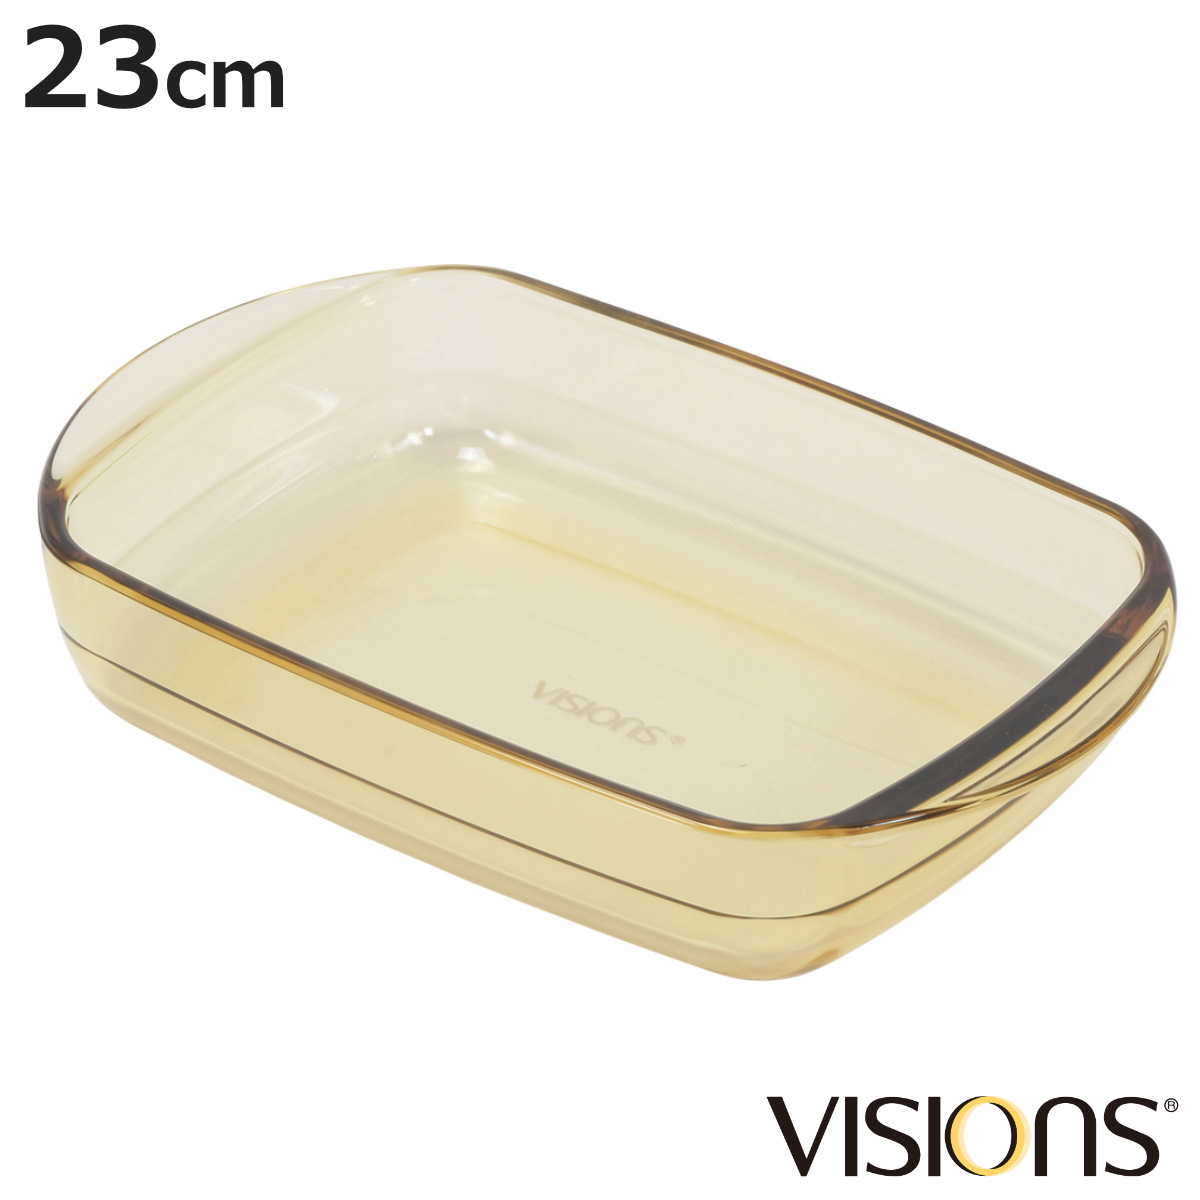 グラタン皿 23cm VISIONS 耐熱ガラス （ 食洗機対応 電子レンジ対応 オーブン対応 耐熱皿 オーブンウェア 食器 皿 グラタン ラザニア オ